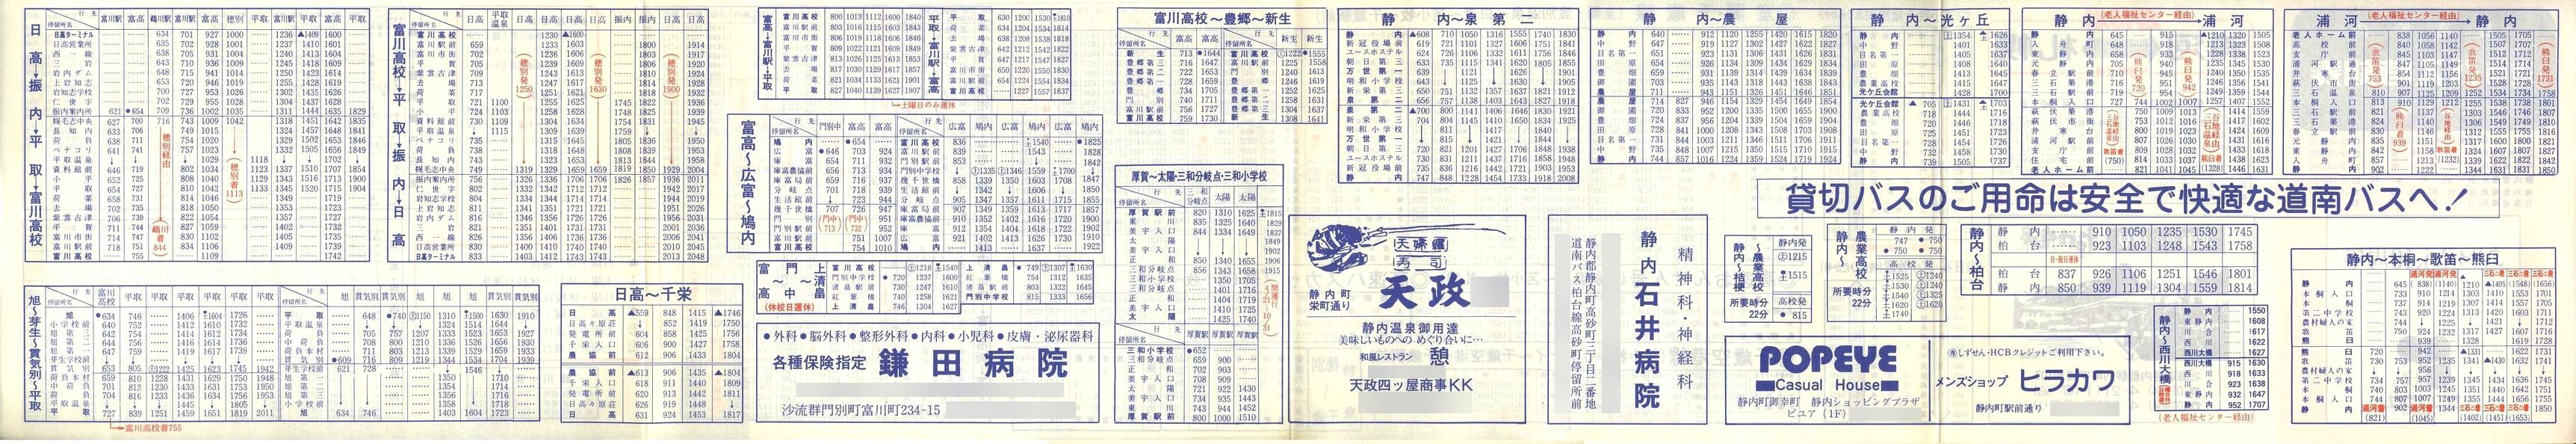 1987-04-01改正_道南バス_日高管内時刻表裏面